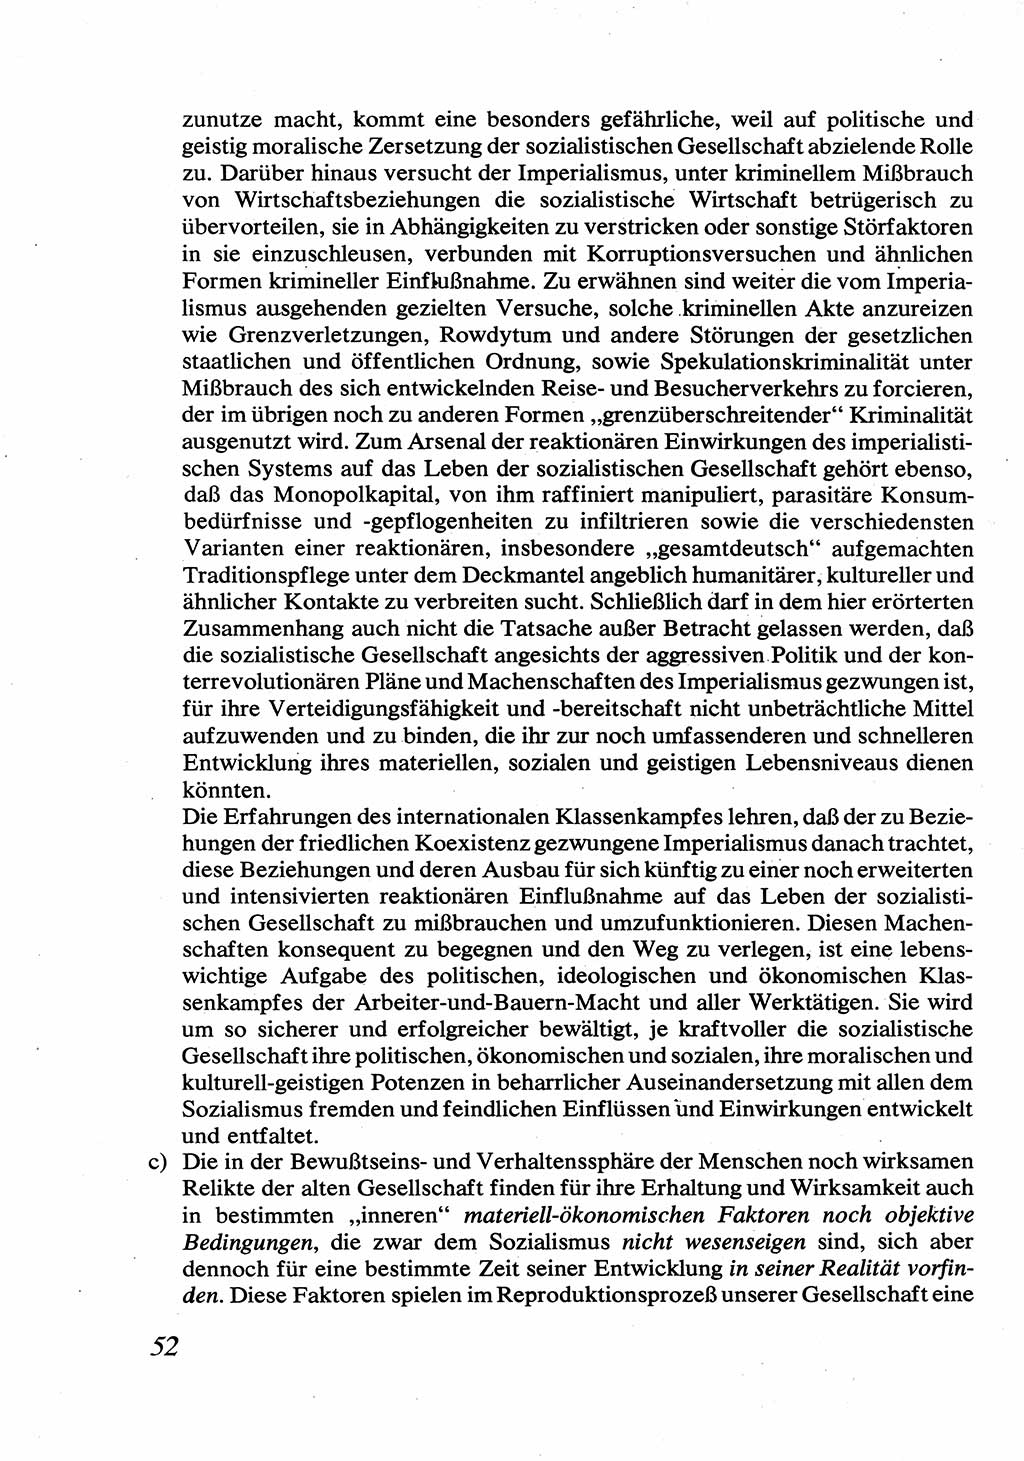 Strafrecht [Deutsche Demokratische Republik (DDR)], Allgemeiner Teil, Lehrbuch 1976, Seite 52 (Strafr. DDR AT Lb. 1976, S. 52)